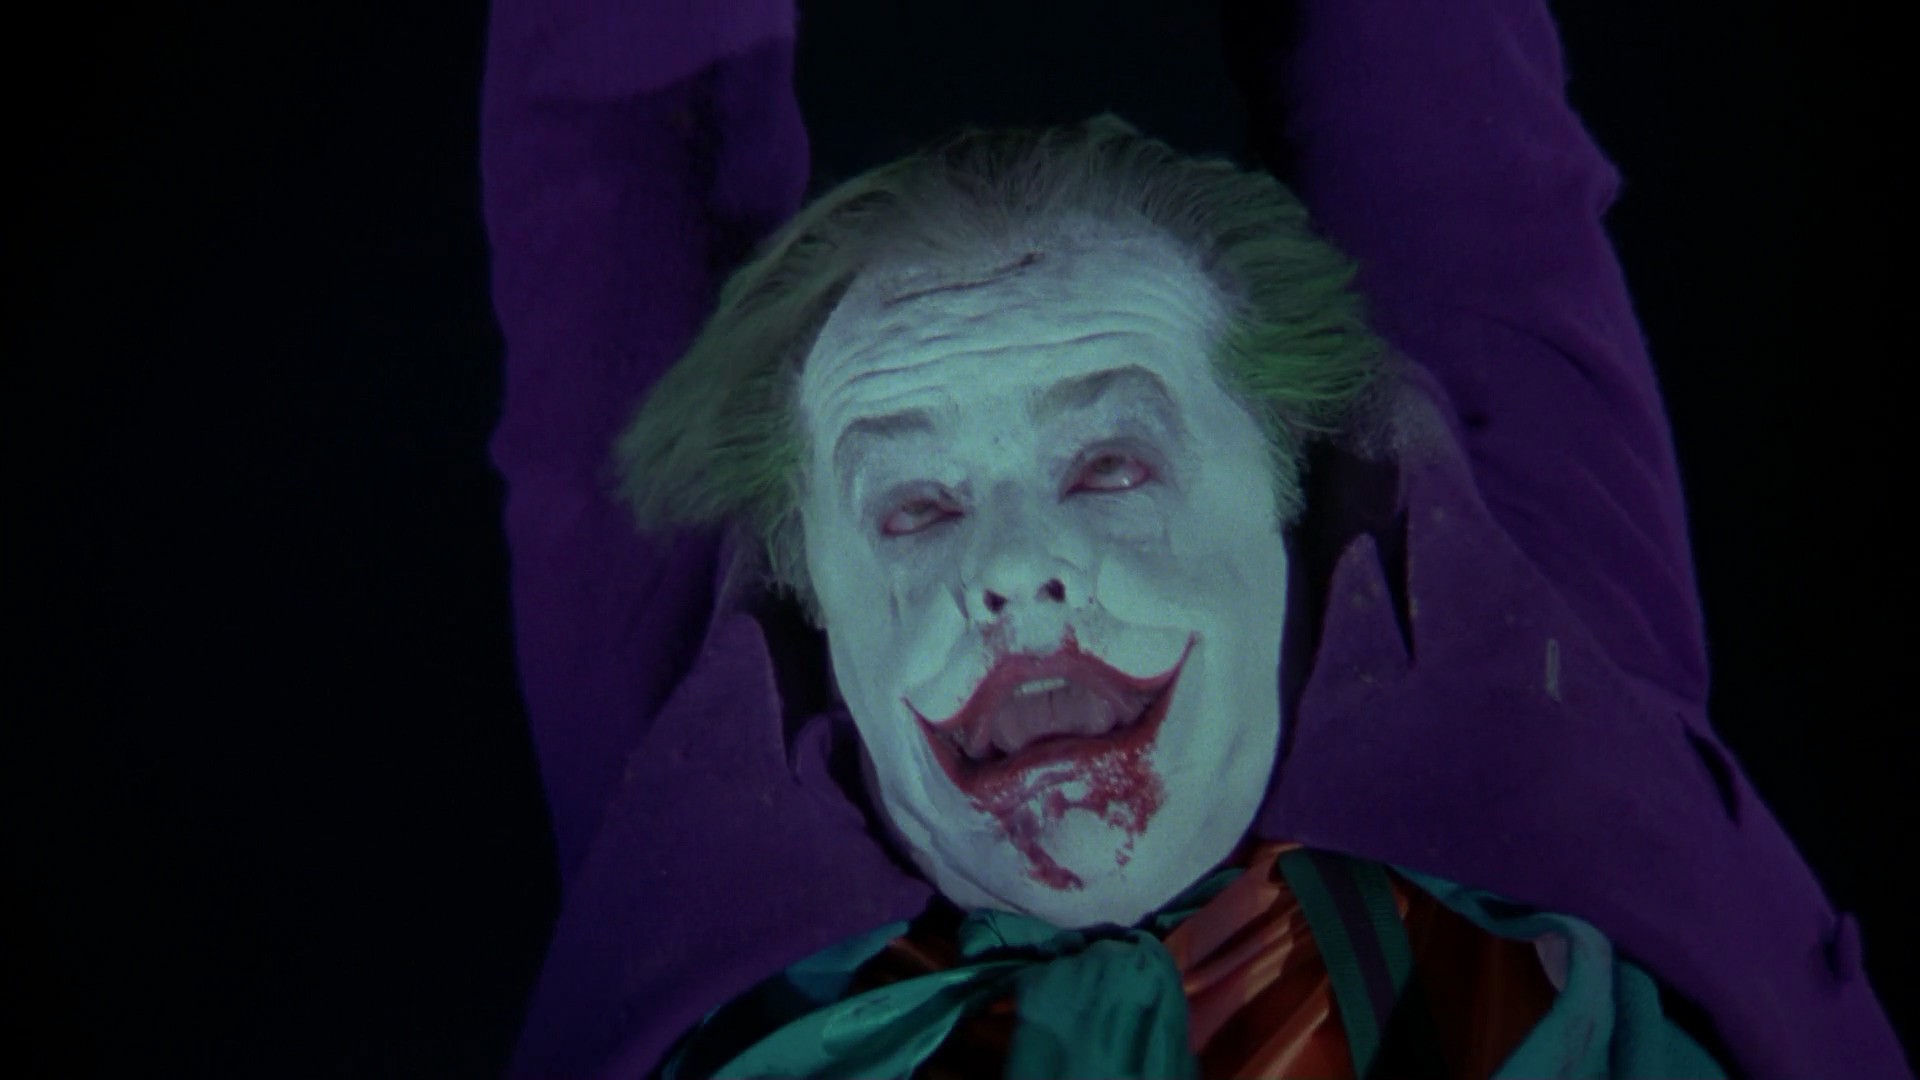 Joker costume - summary